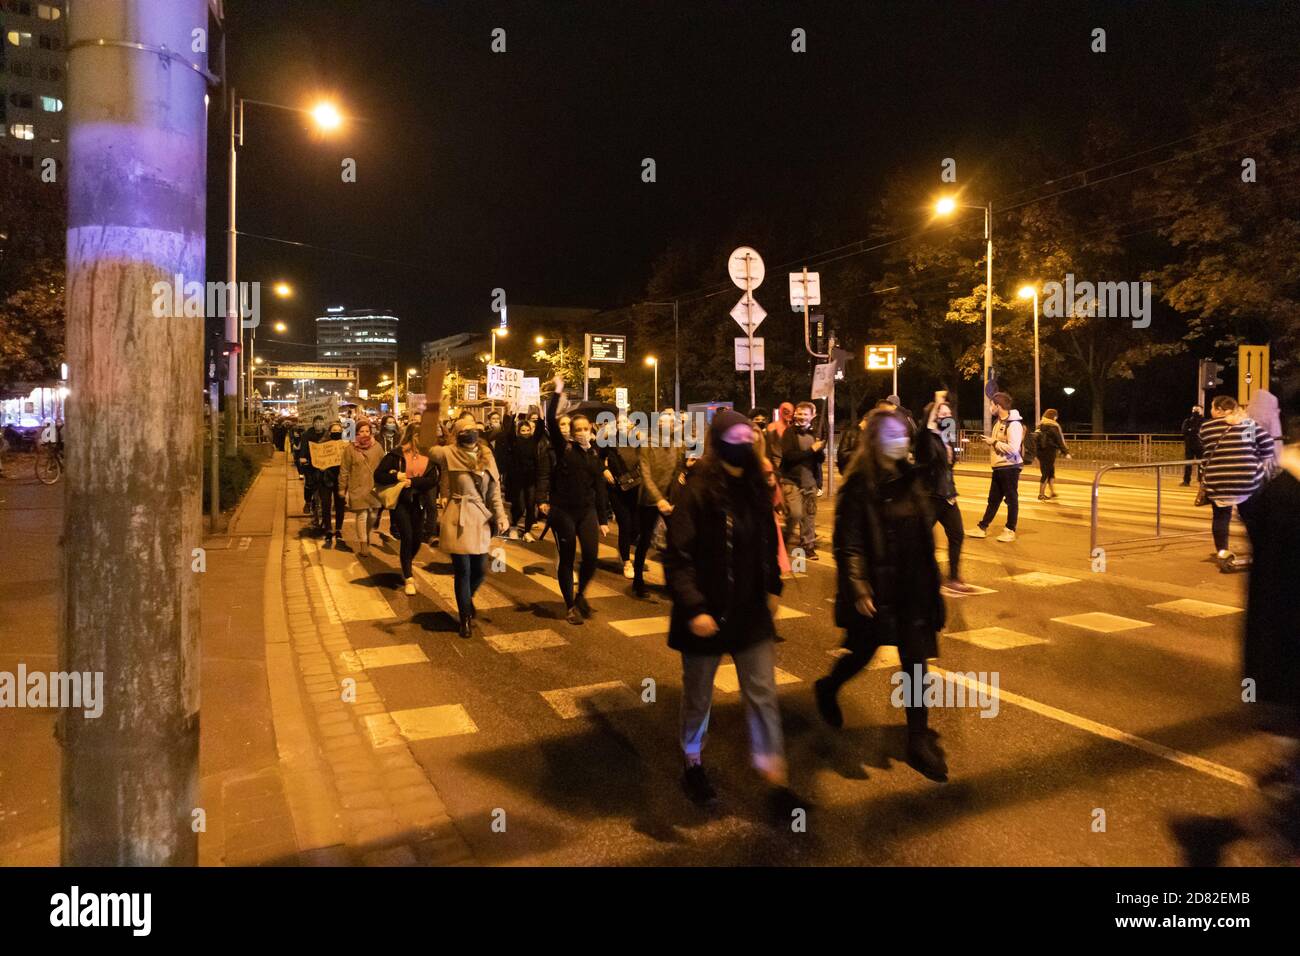 Breslau, Polen. Oktober 2020. Protest Gegen Das Neue Abtreibungsgesetz. Quelle: Marek Durajczyk/Alamy Live News Stockfoto